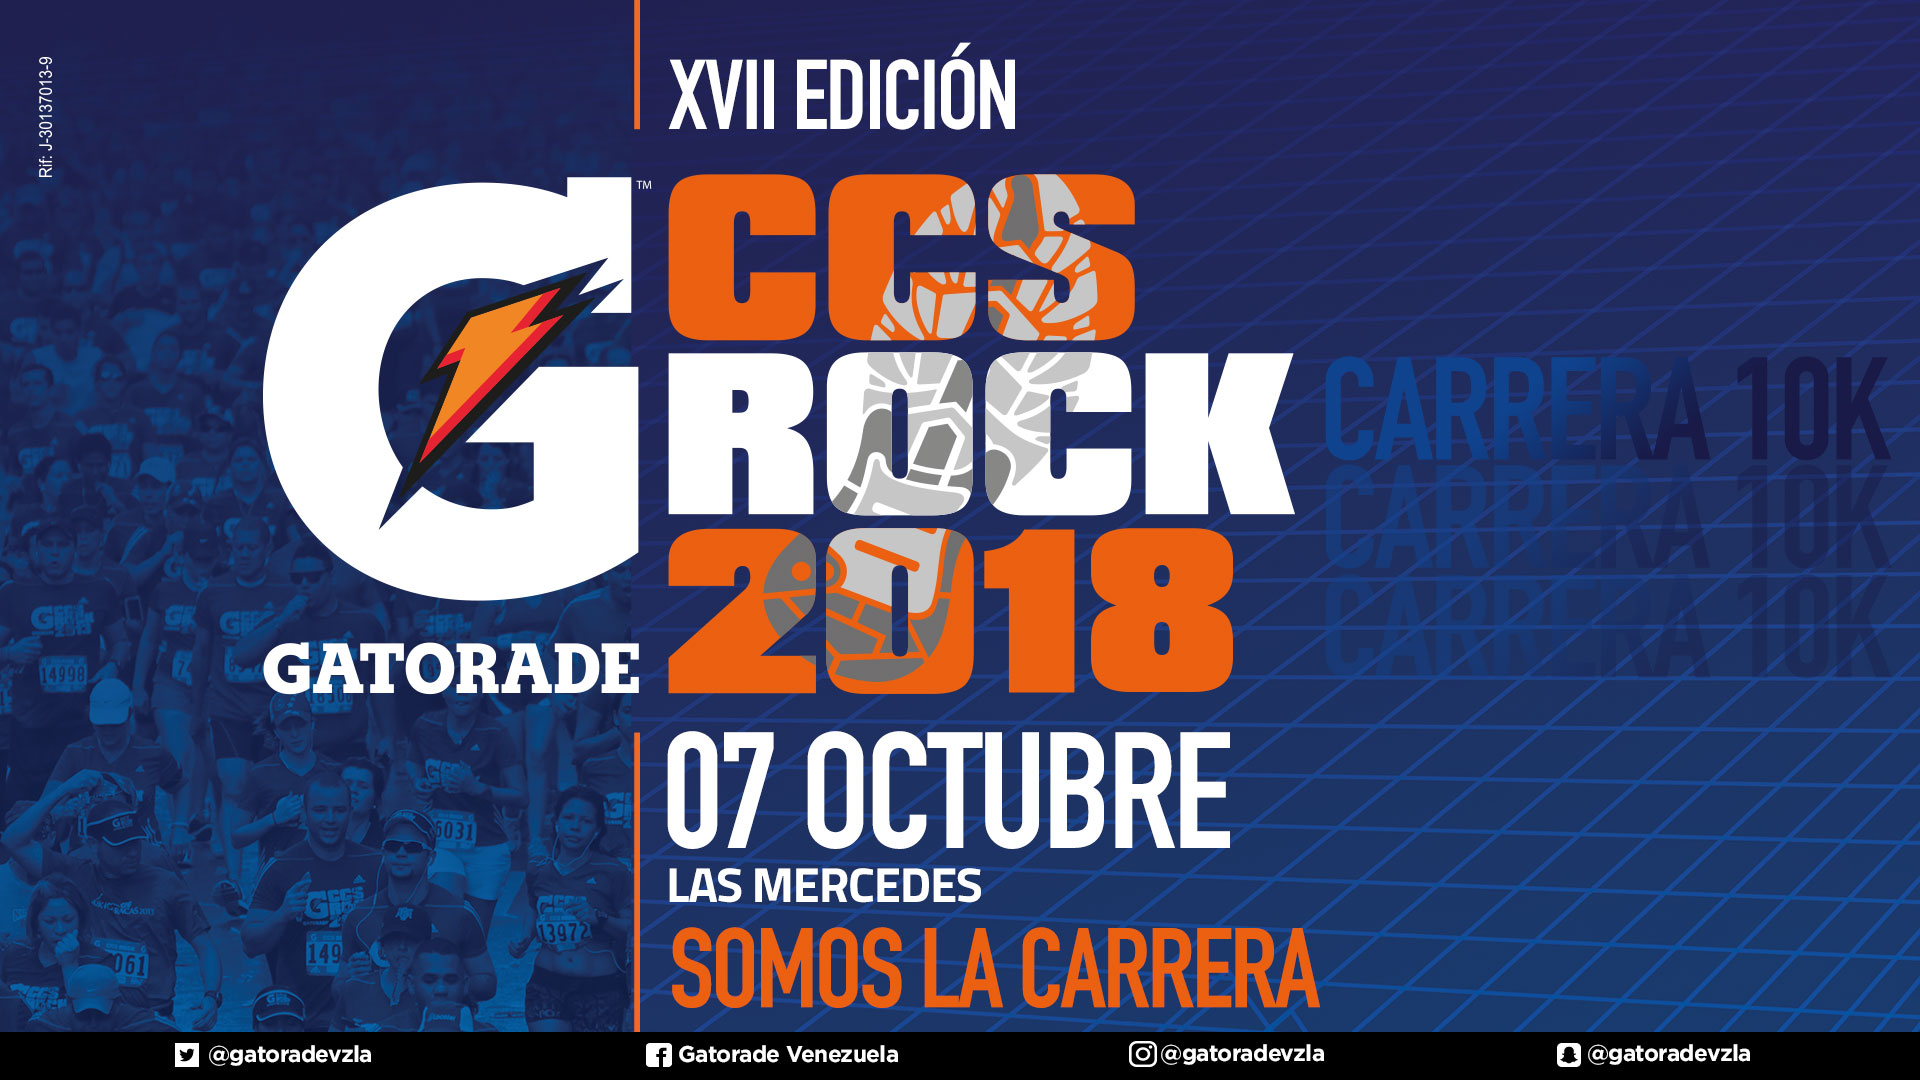 Gatorade Caracas Rock 2018 viene de carrera a la ciudad